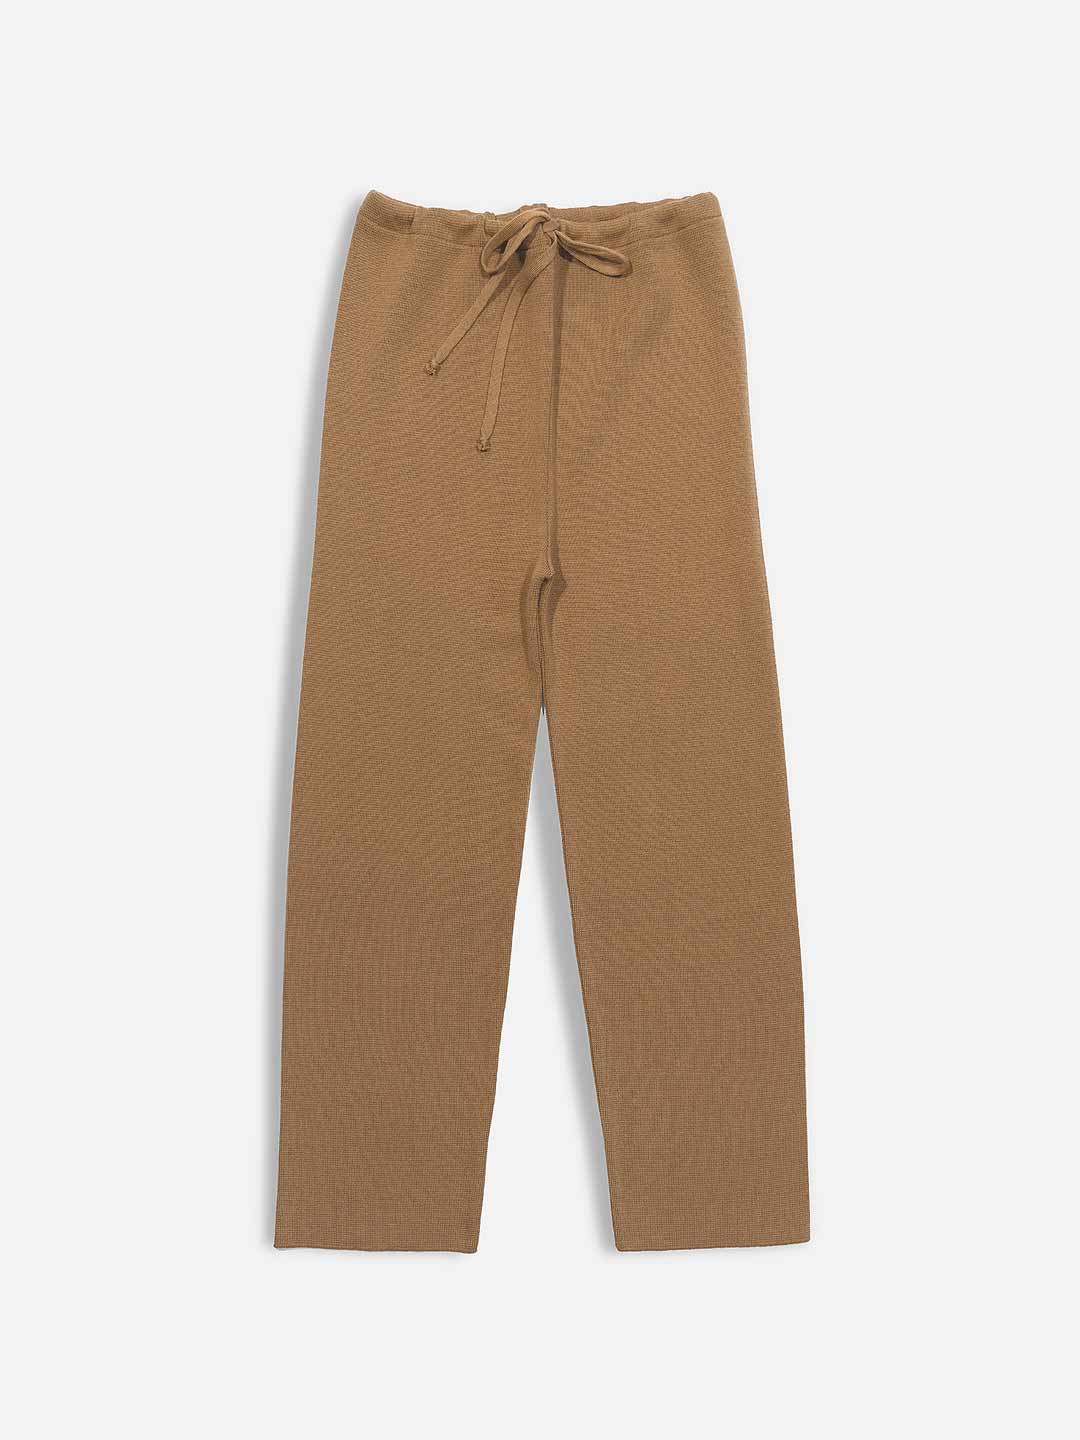 Plain pants with Merino wool ties